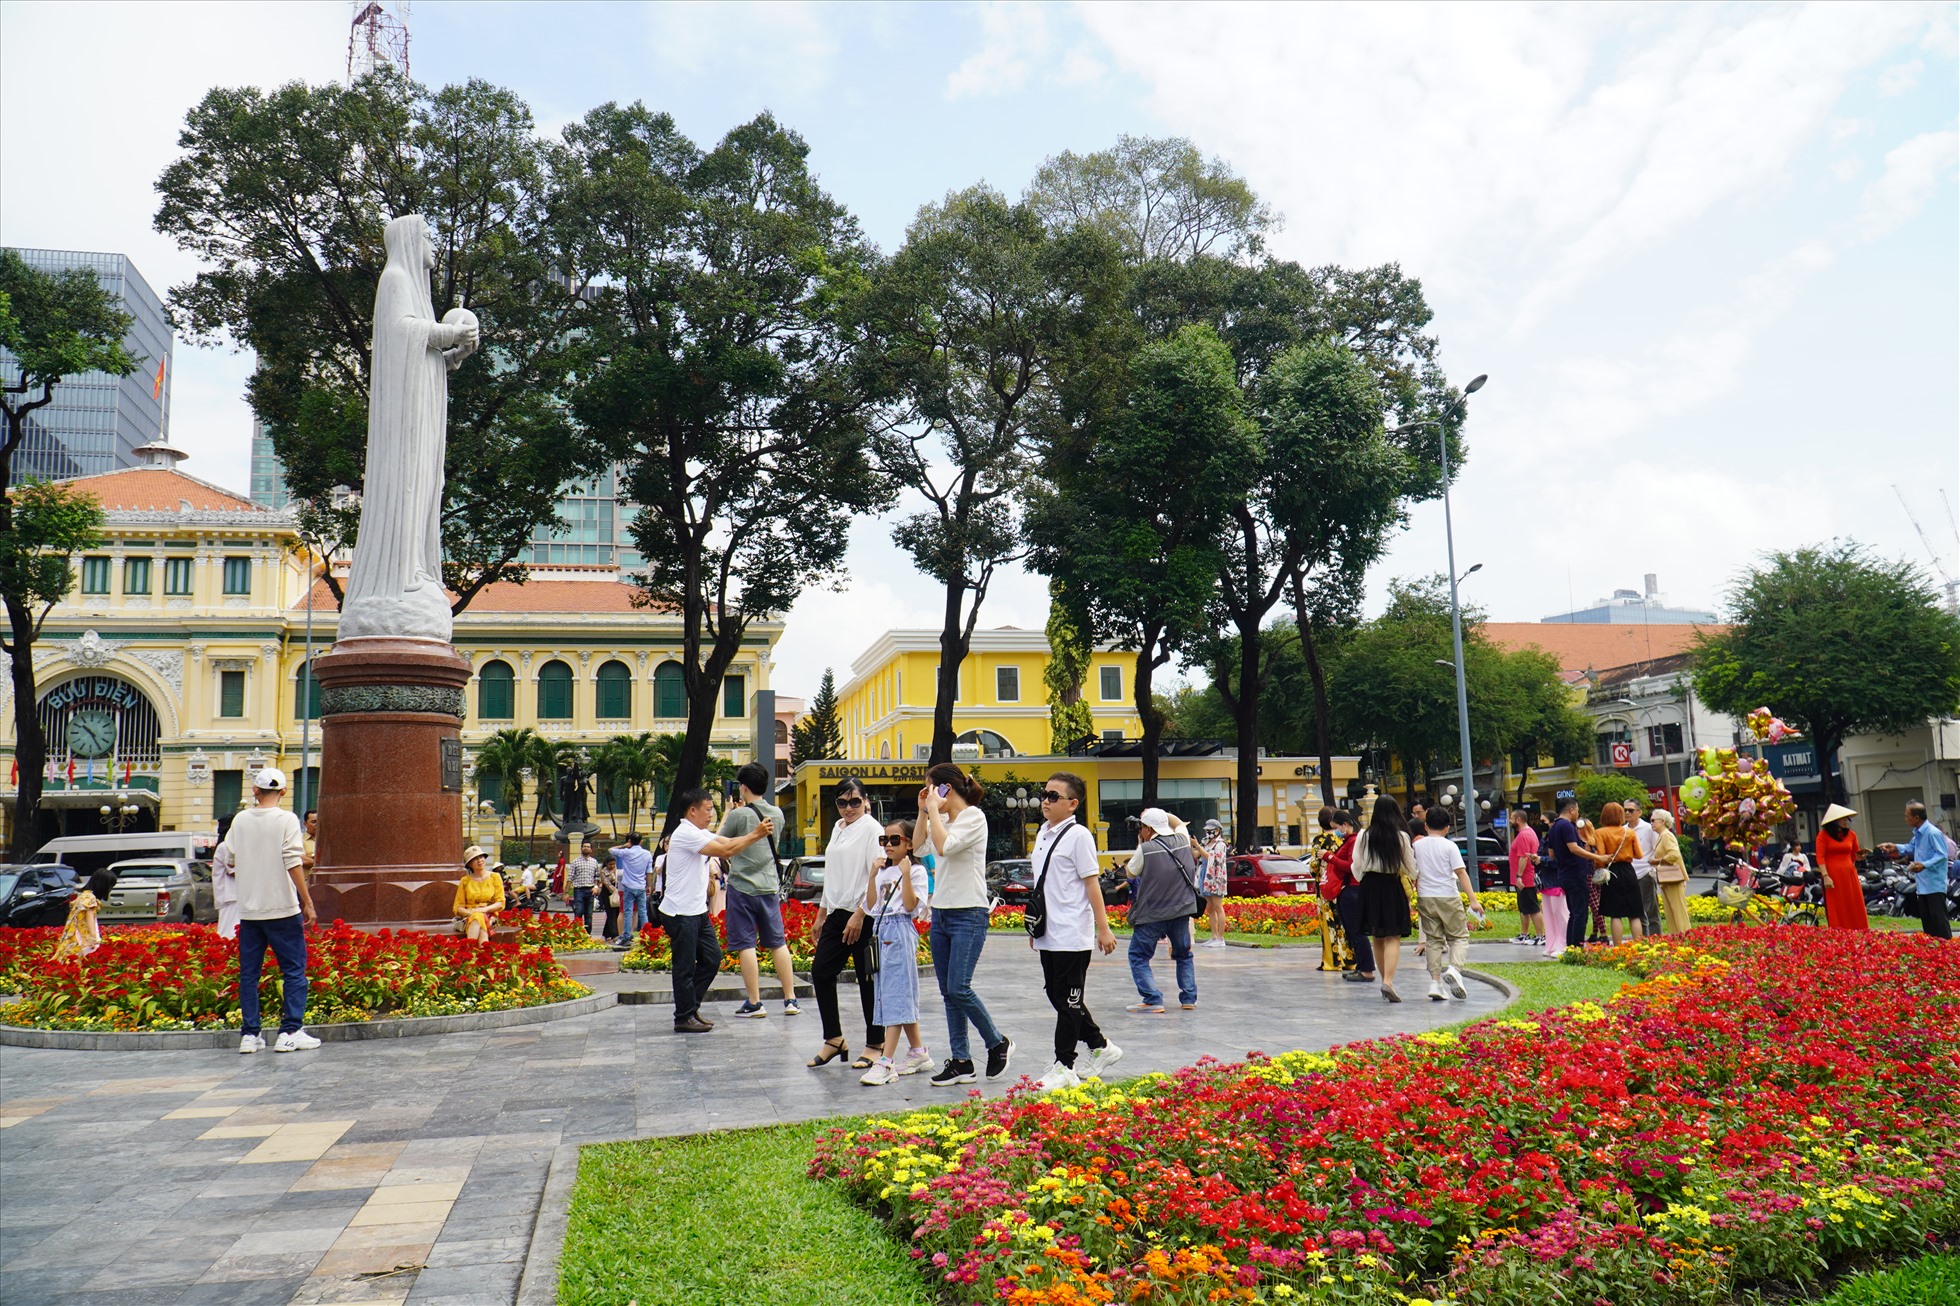 Không chỉ đường hoa Nguyễn Huệ, những điểm tham quan nổi tiếng khác tại TPHCM như nhà thờ Đức Bà cũng tấp nập khách du xuân.